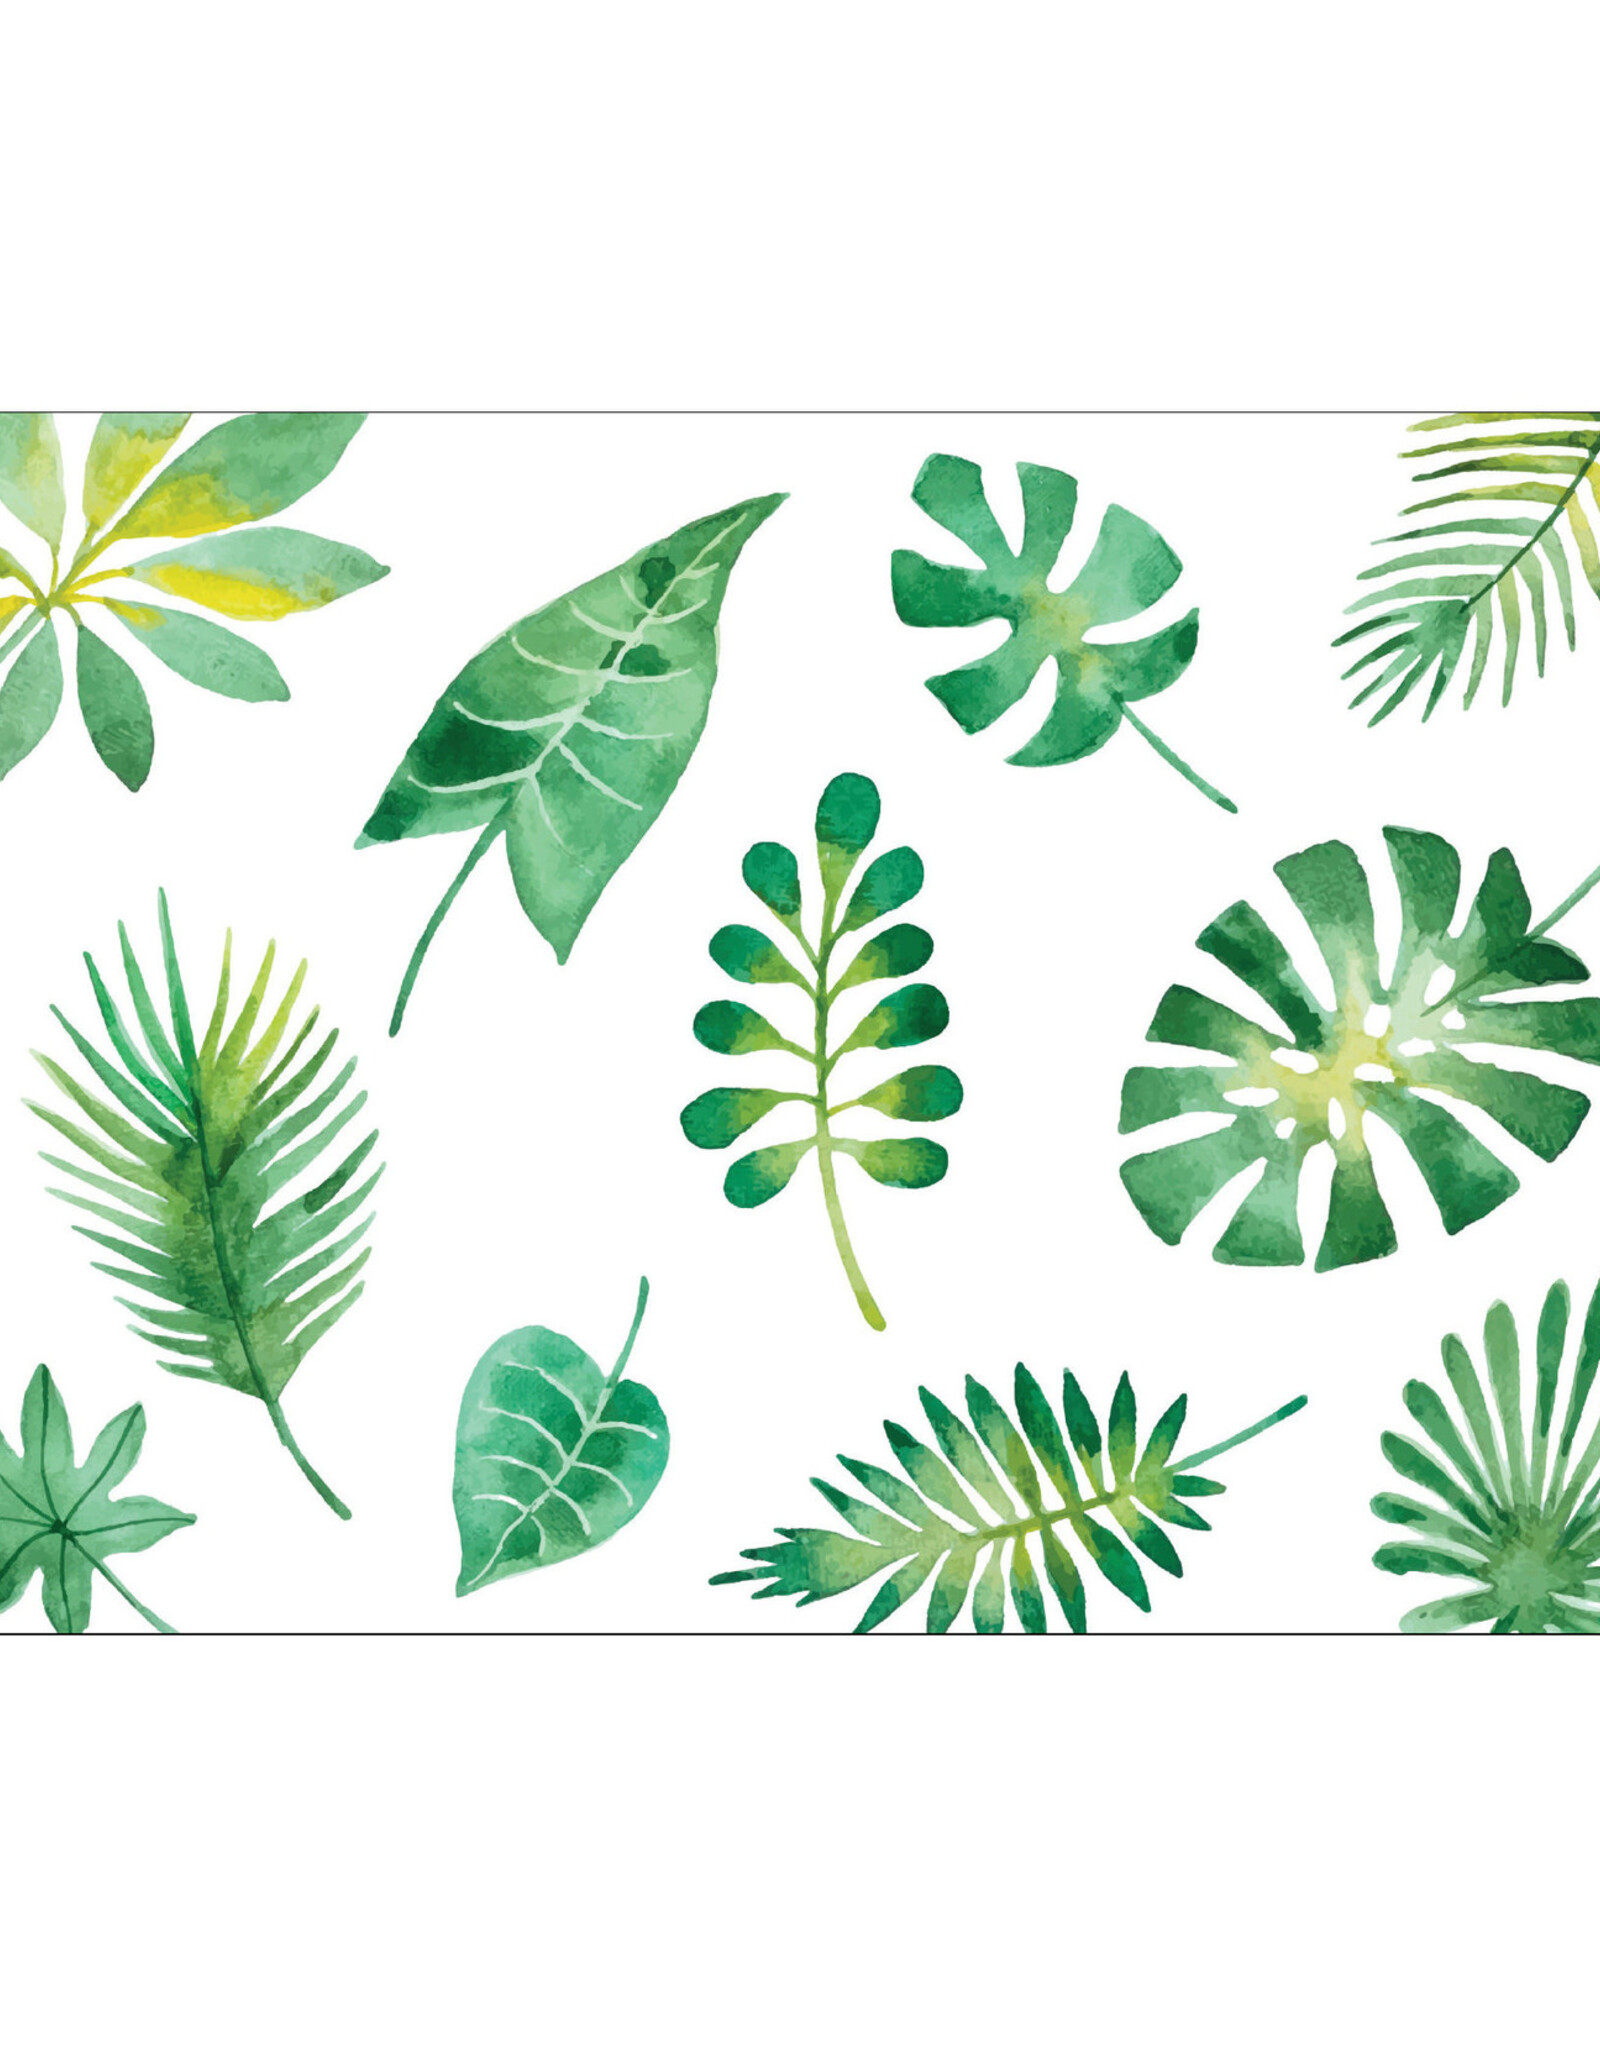 Postkaart tropical leafs N